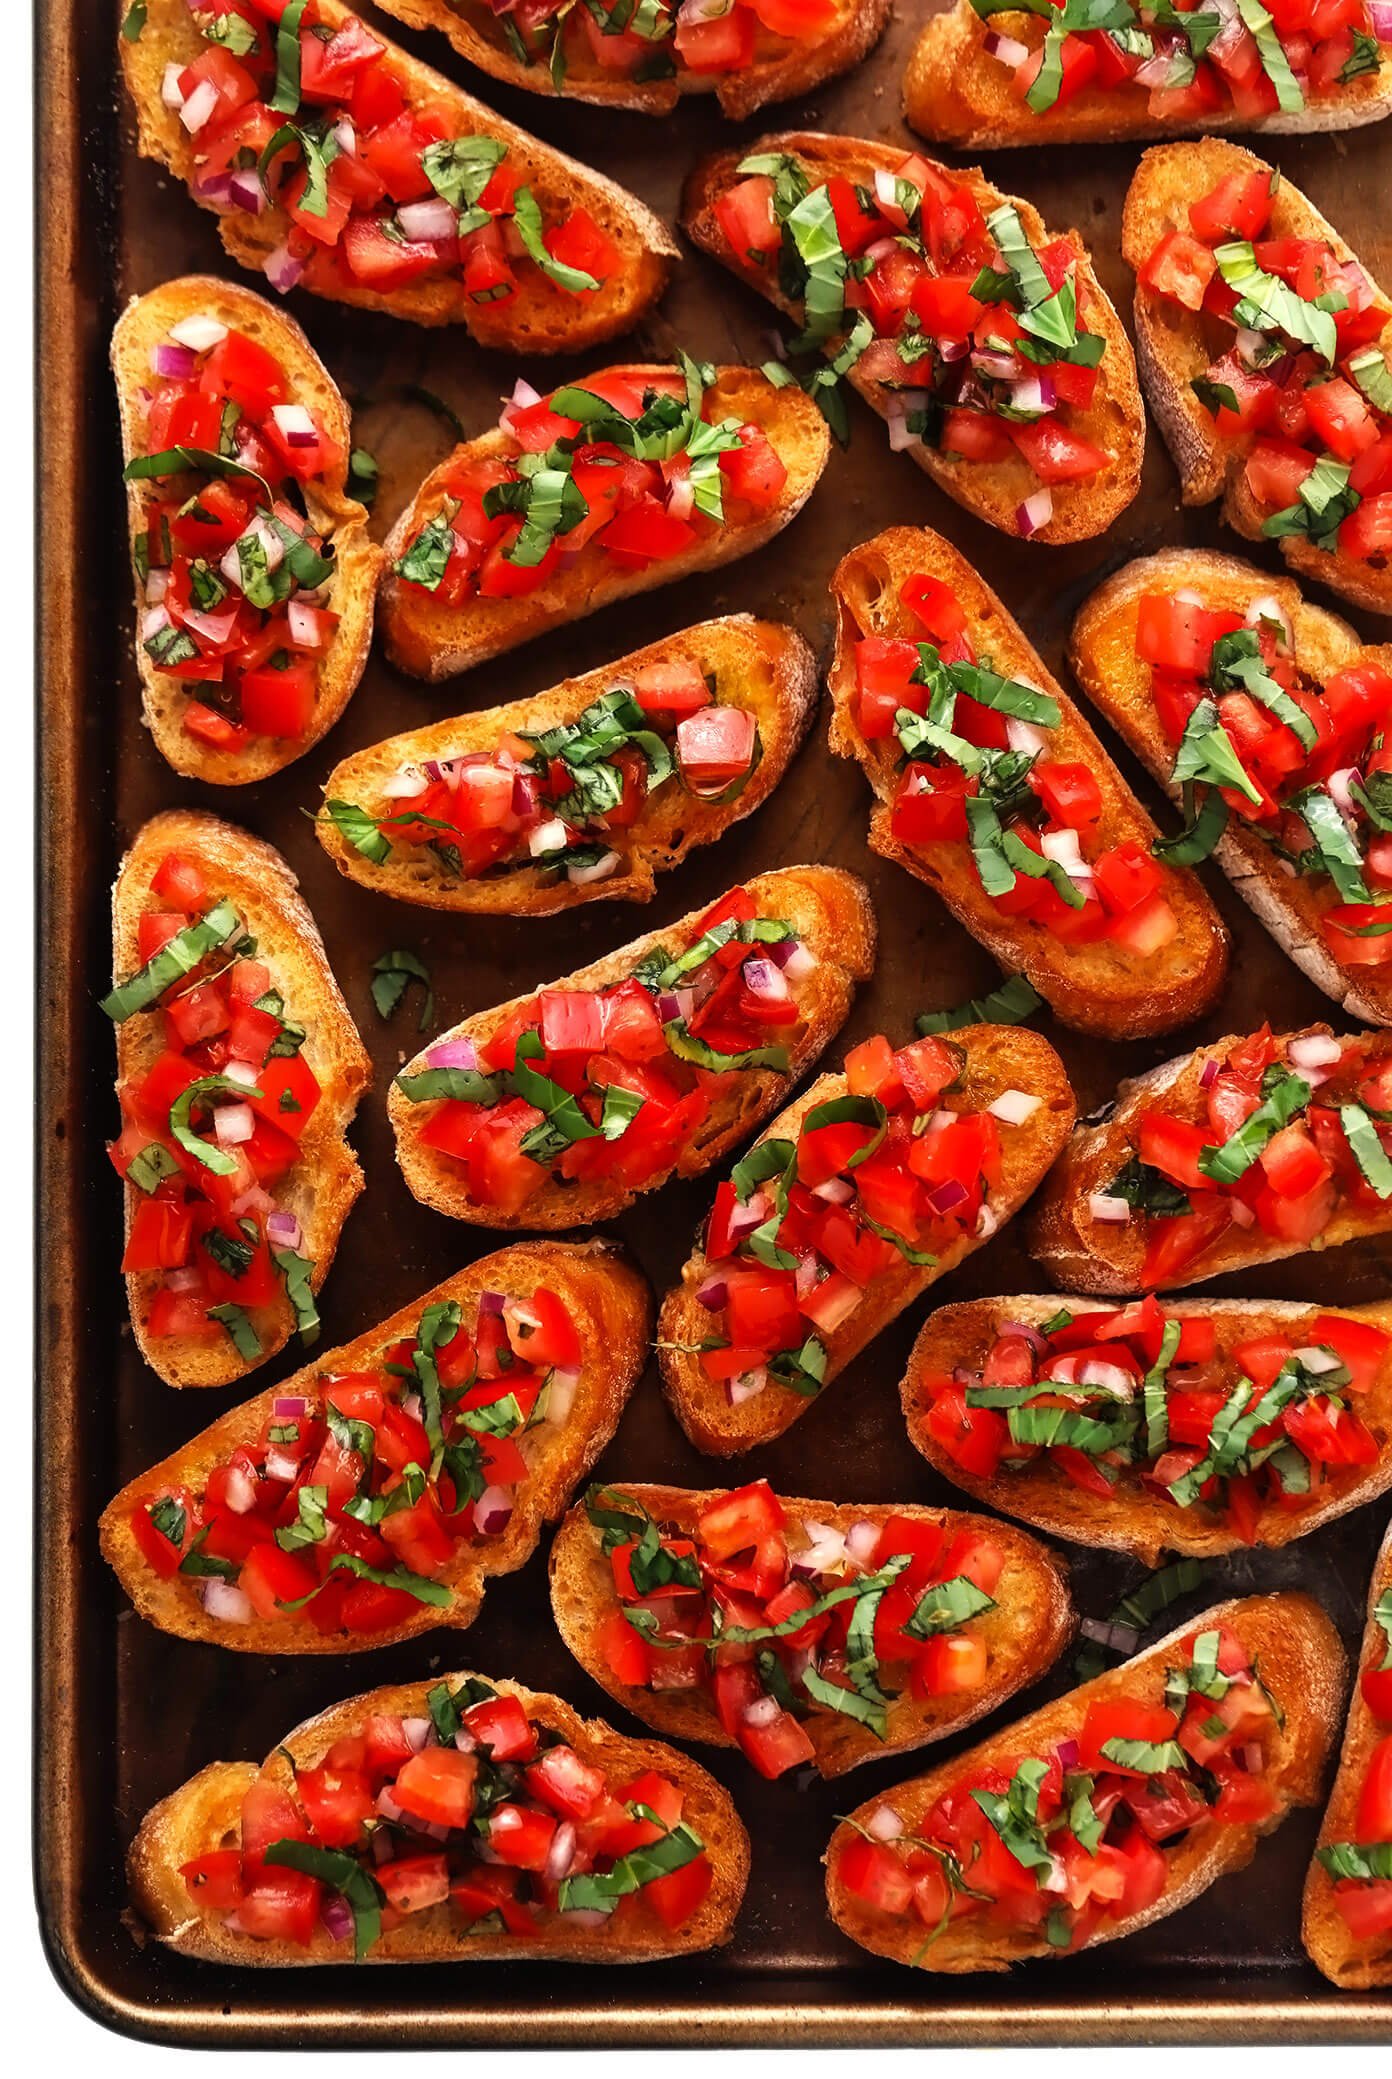 Tomato Bruschetta Recipe on Sheet Pan